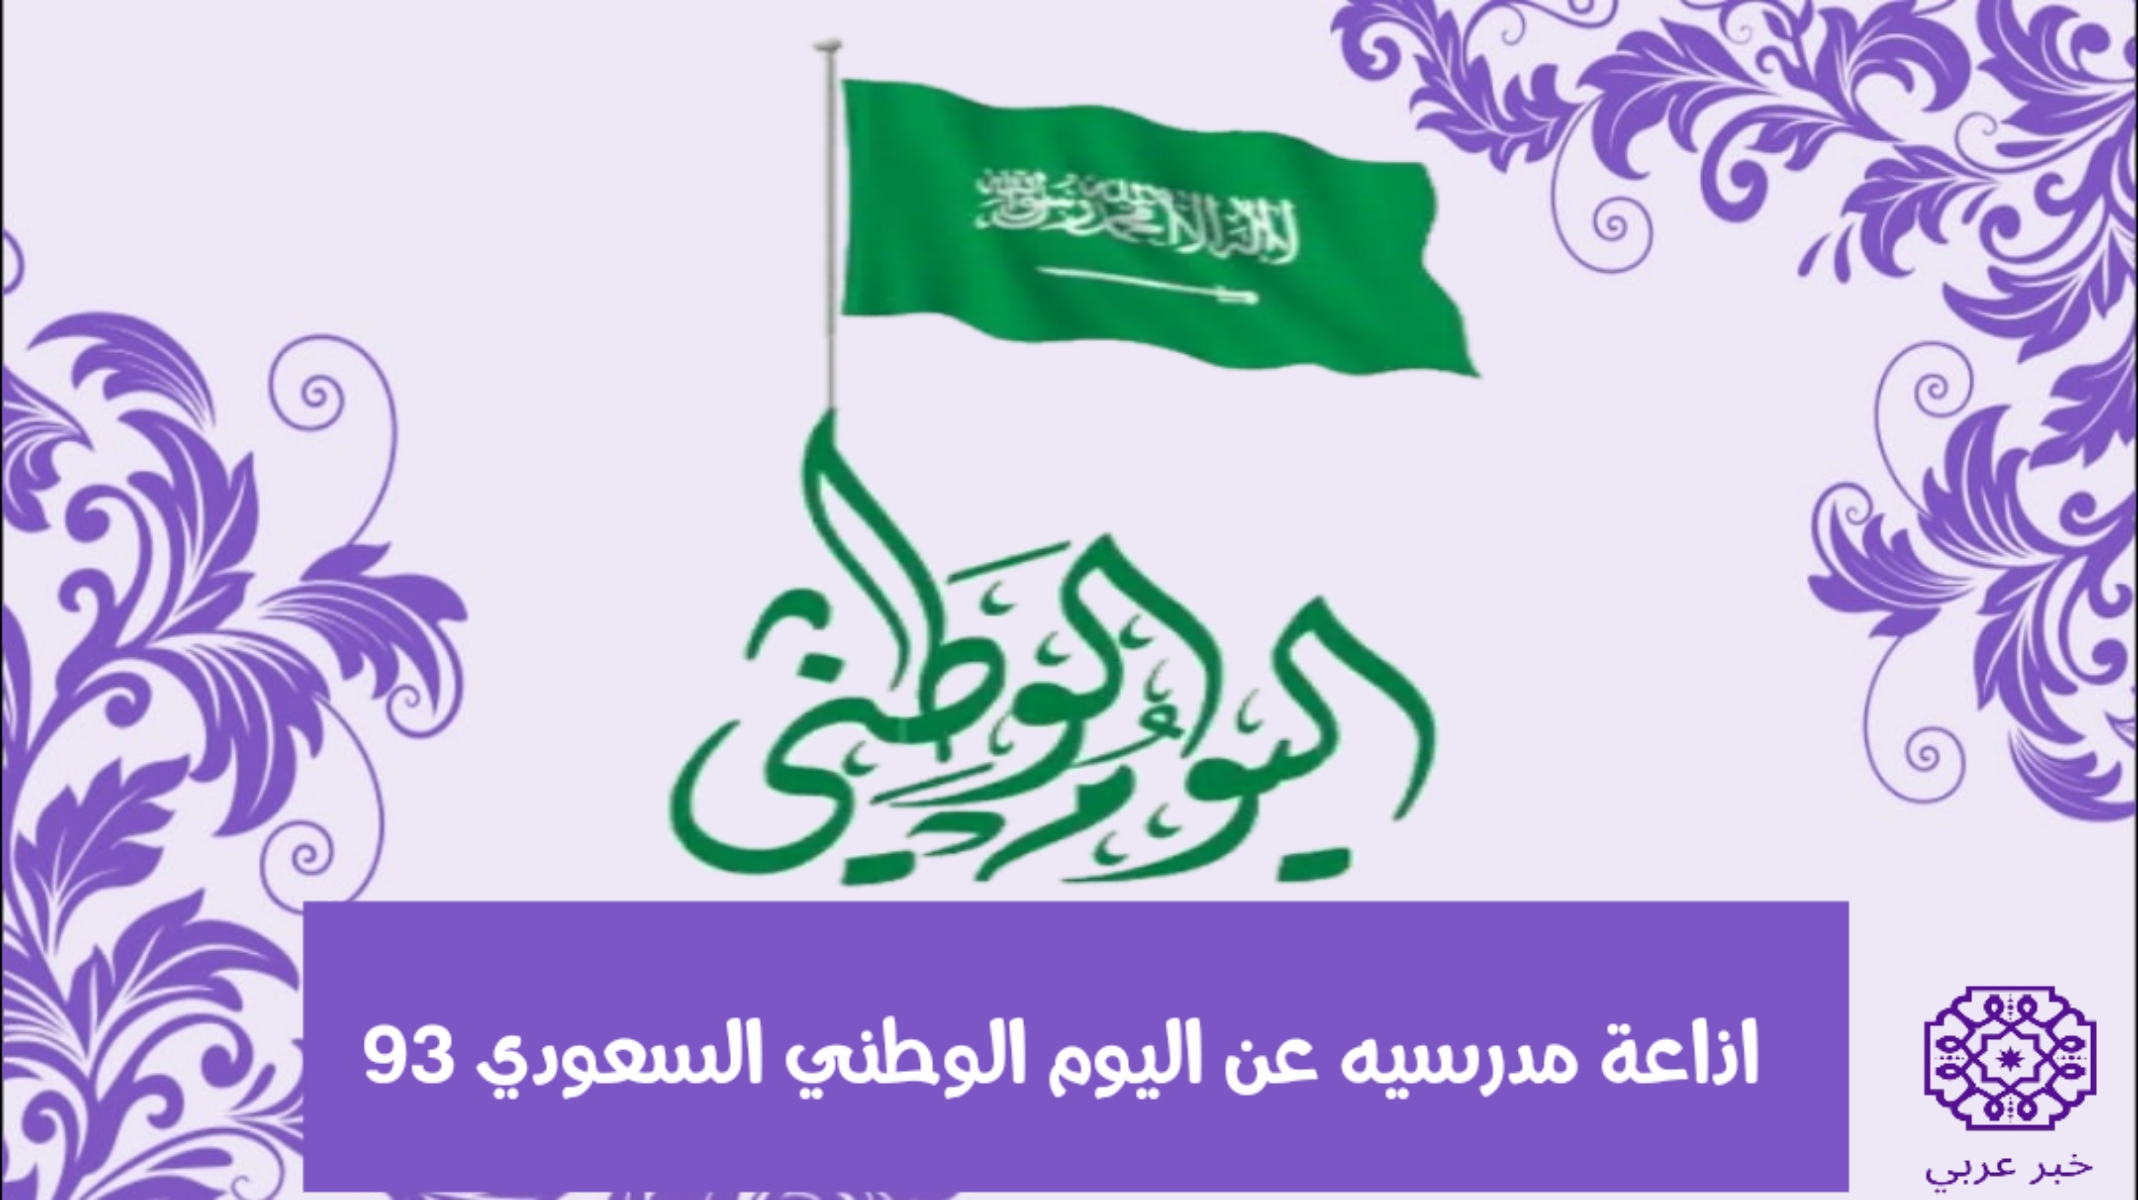 اذاعة مدرسيه عن اليوم الوطني السعودي 93 pdf و doc مكتوبة وبالصور 1445